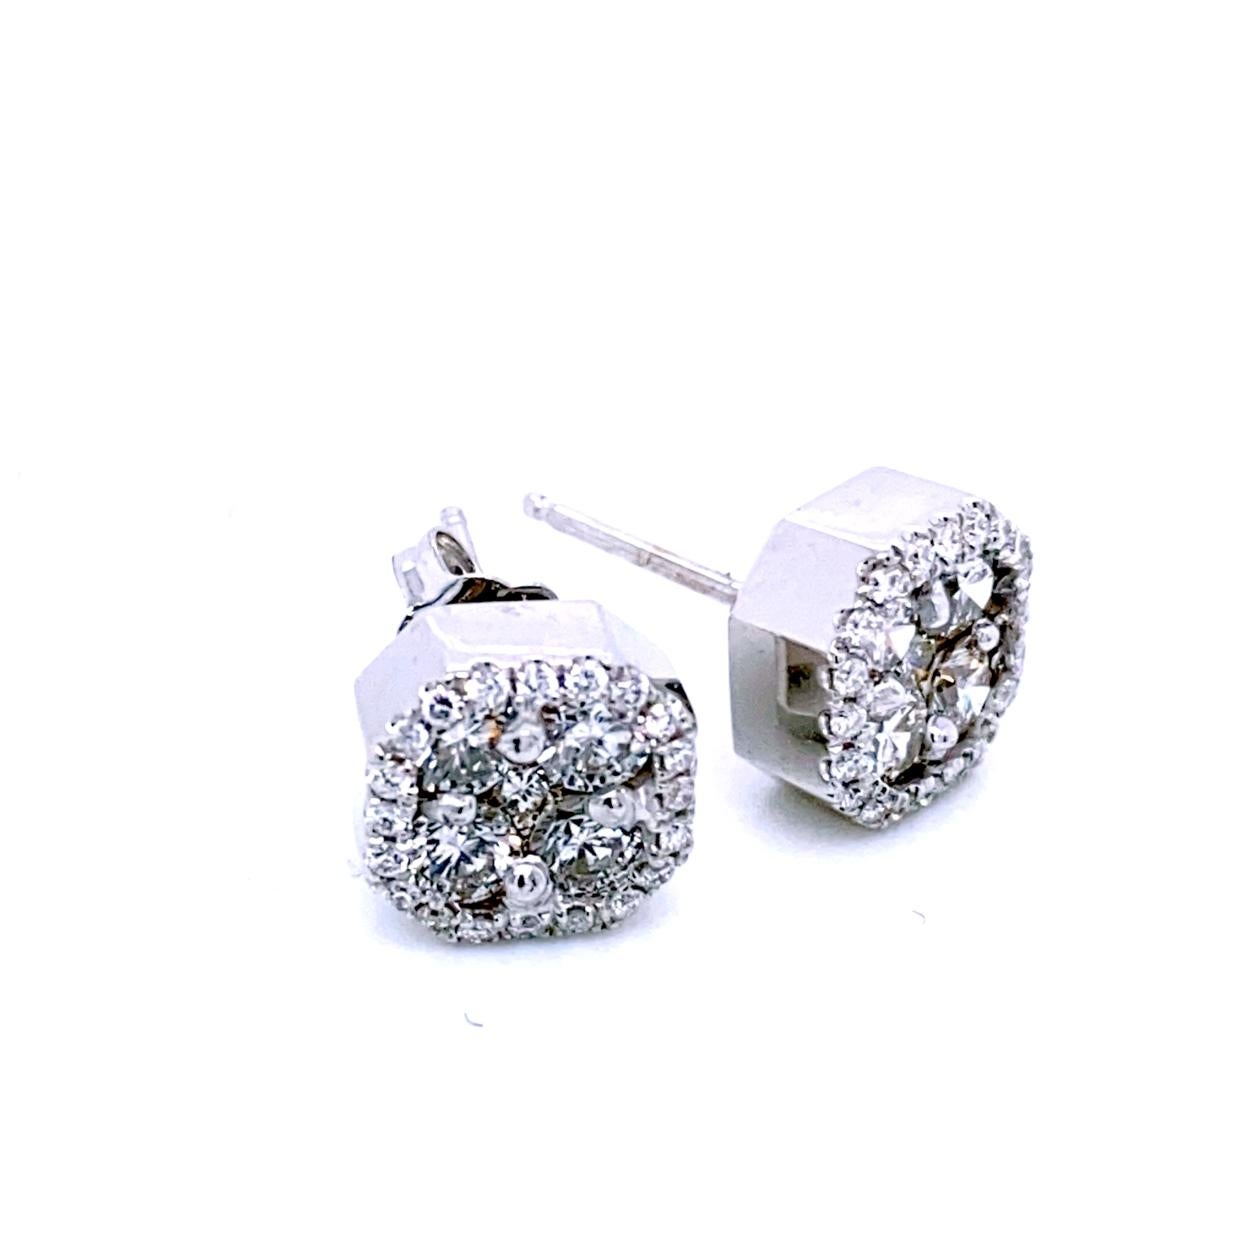 Cette magnifique paire de boucles d'oreilles est fabriquée en or 14 carats avec 8 pièces de diamants ronds brillants de 3,2 mm serties de 2 pièces de diamants ronds brillants de 2,0 mm au milieu pour créer un aspect homogène, placées au centre d'un